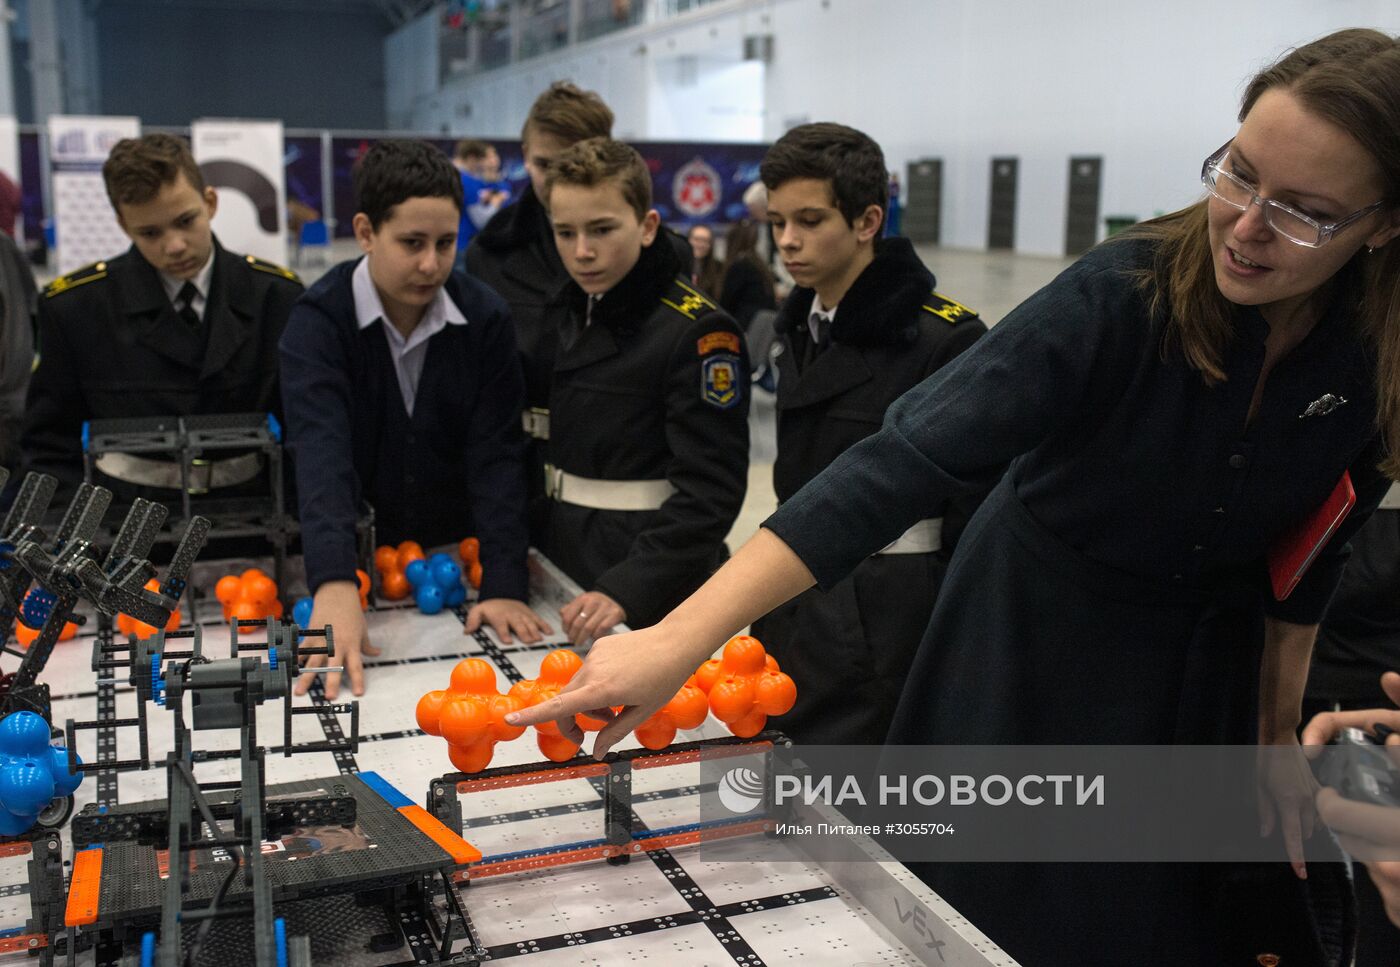 II Военно-научная конференция "Роботизация Вооруженных сил РФ"